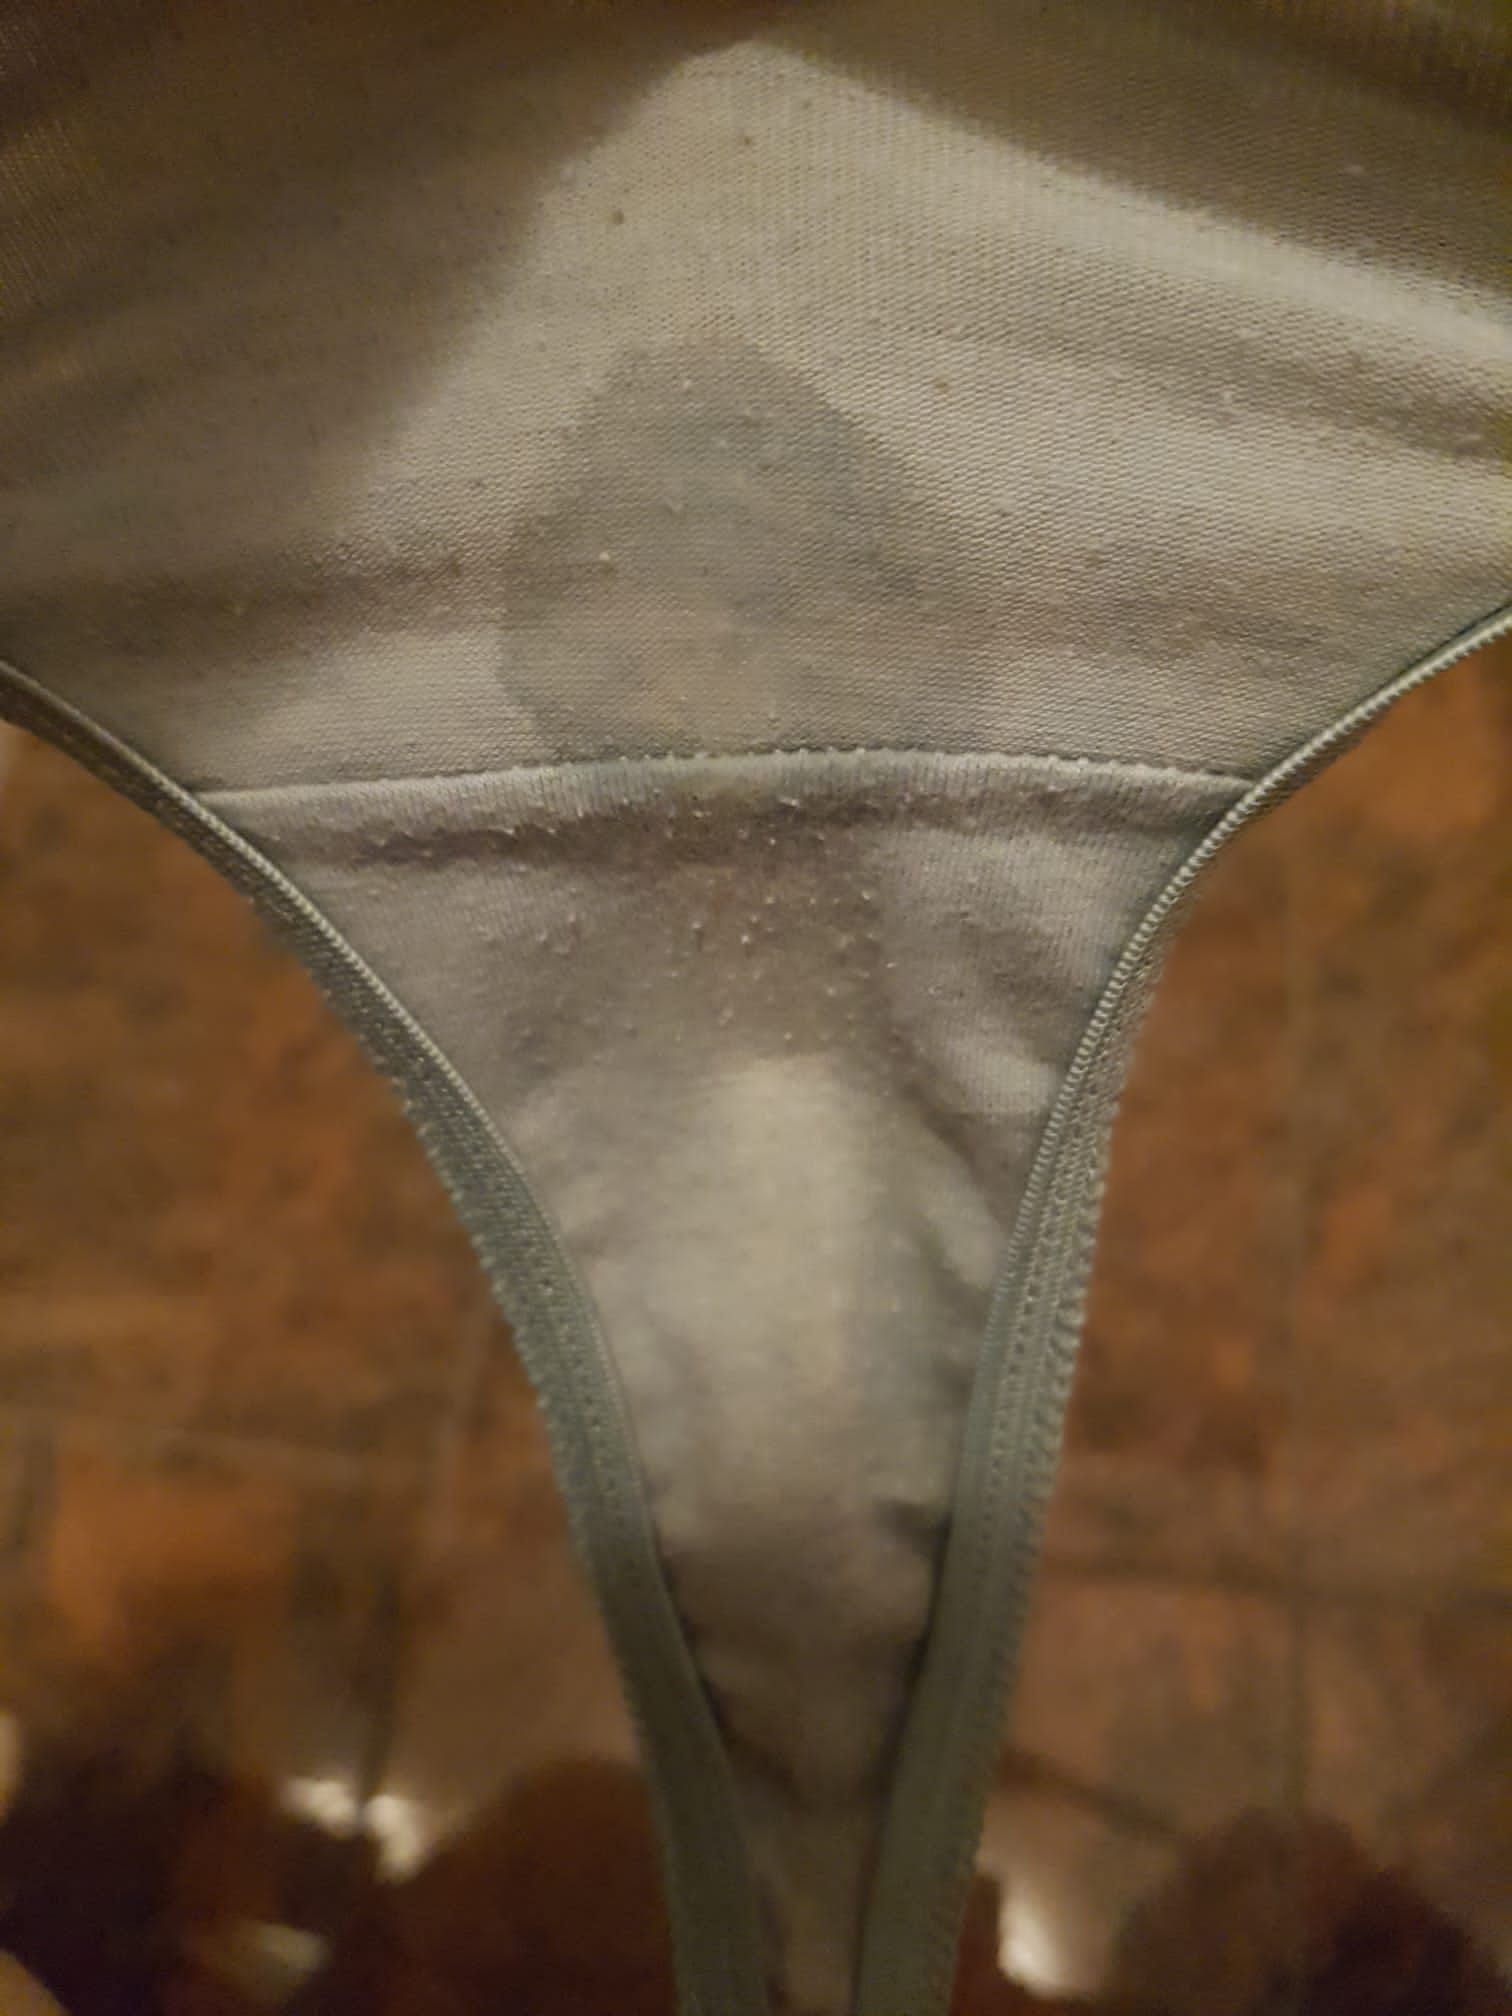 Wet panty